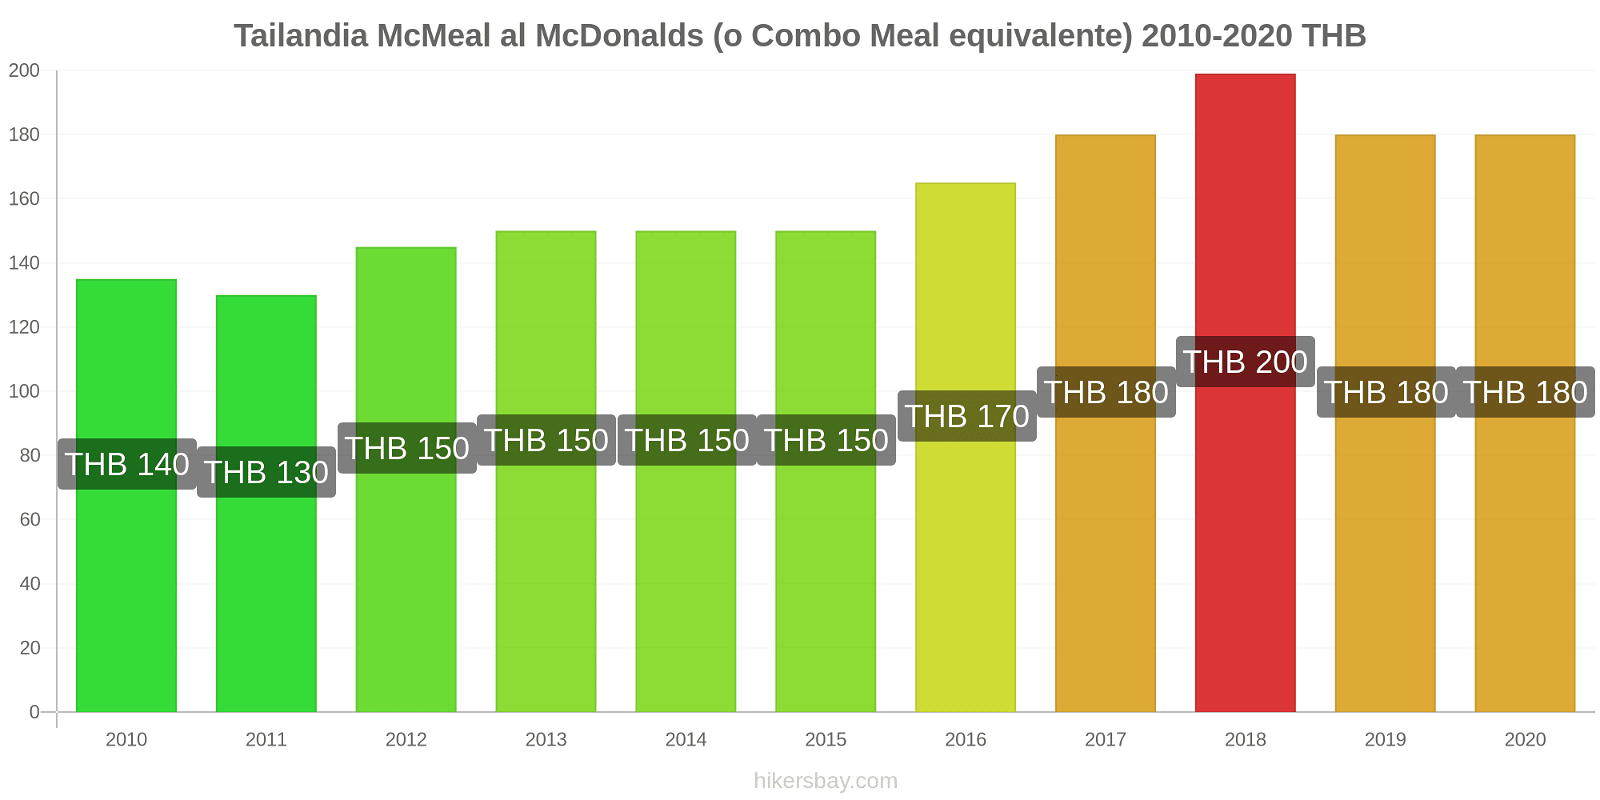 Tailandia variazioni di prezzo McMeal al McDonalds (o in un equivalente fastfood) hikersbay.com